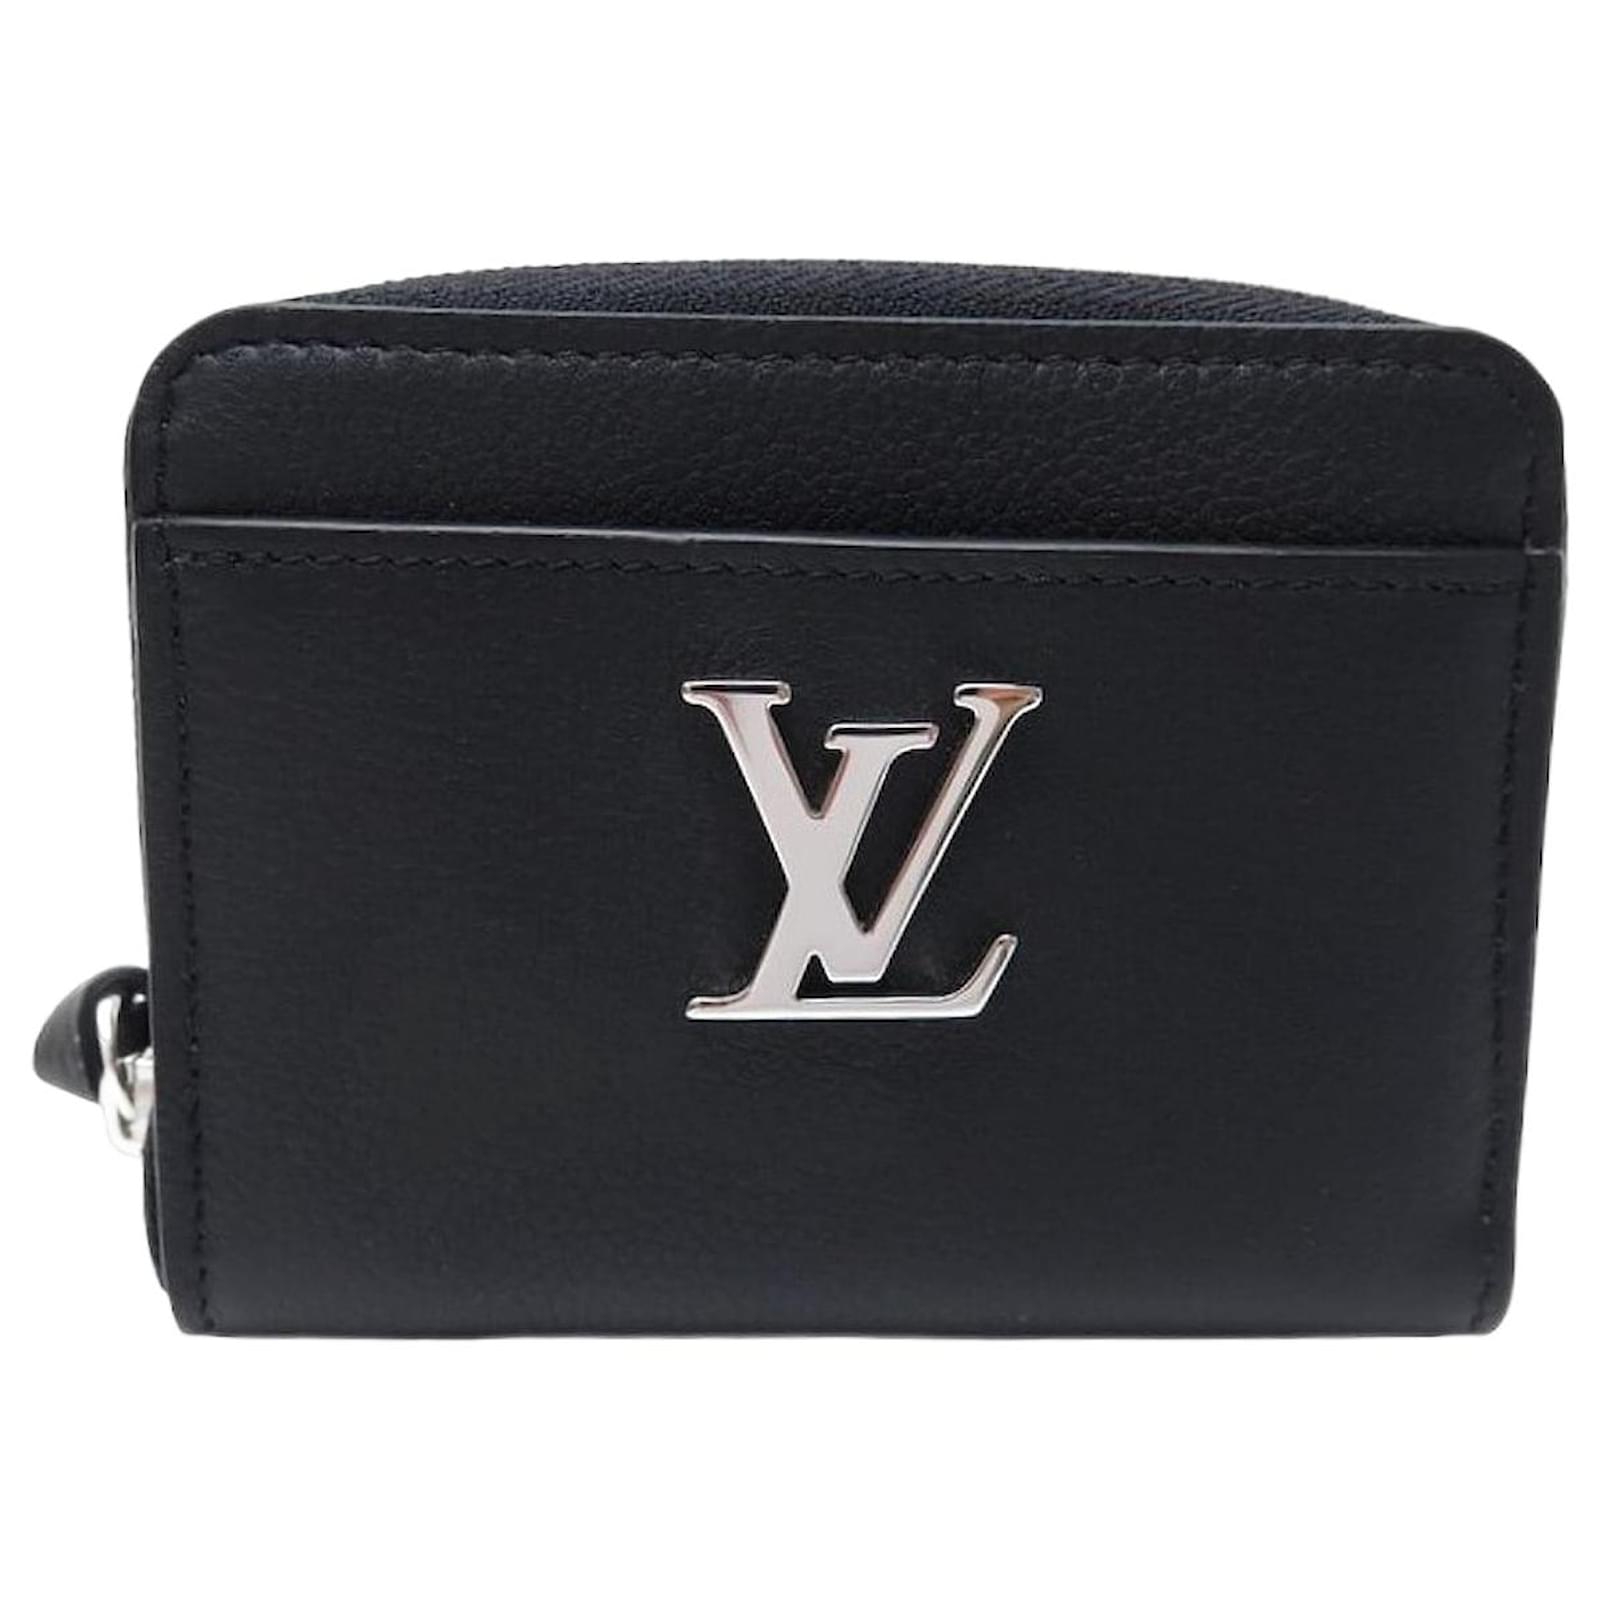 LOUIS VUITTON Louis Vuitton Portefeuille Lock Me Long Wallet Zippy